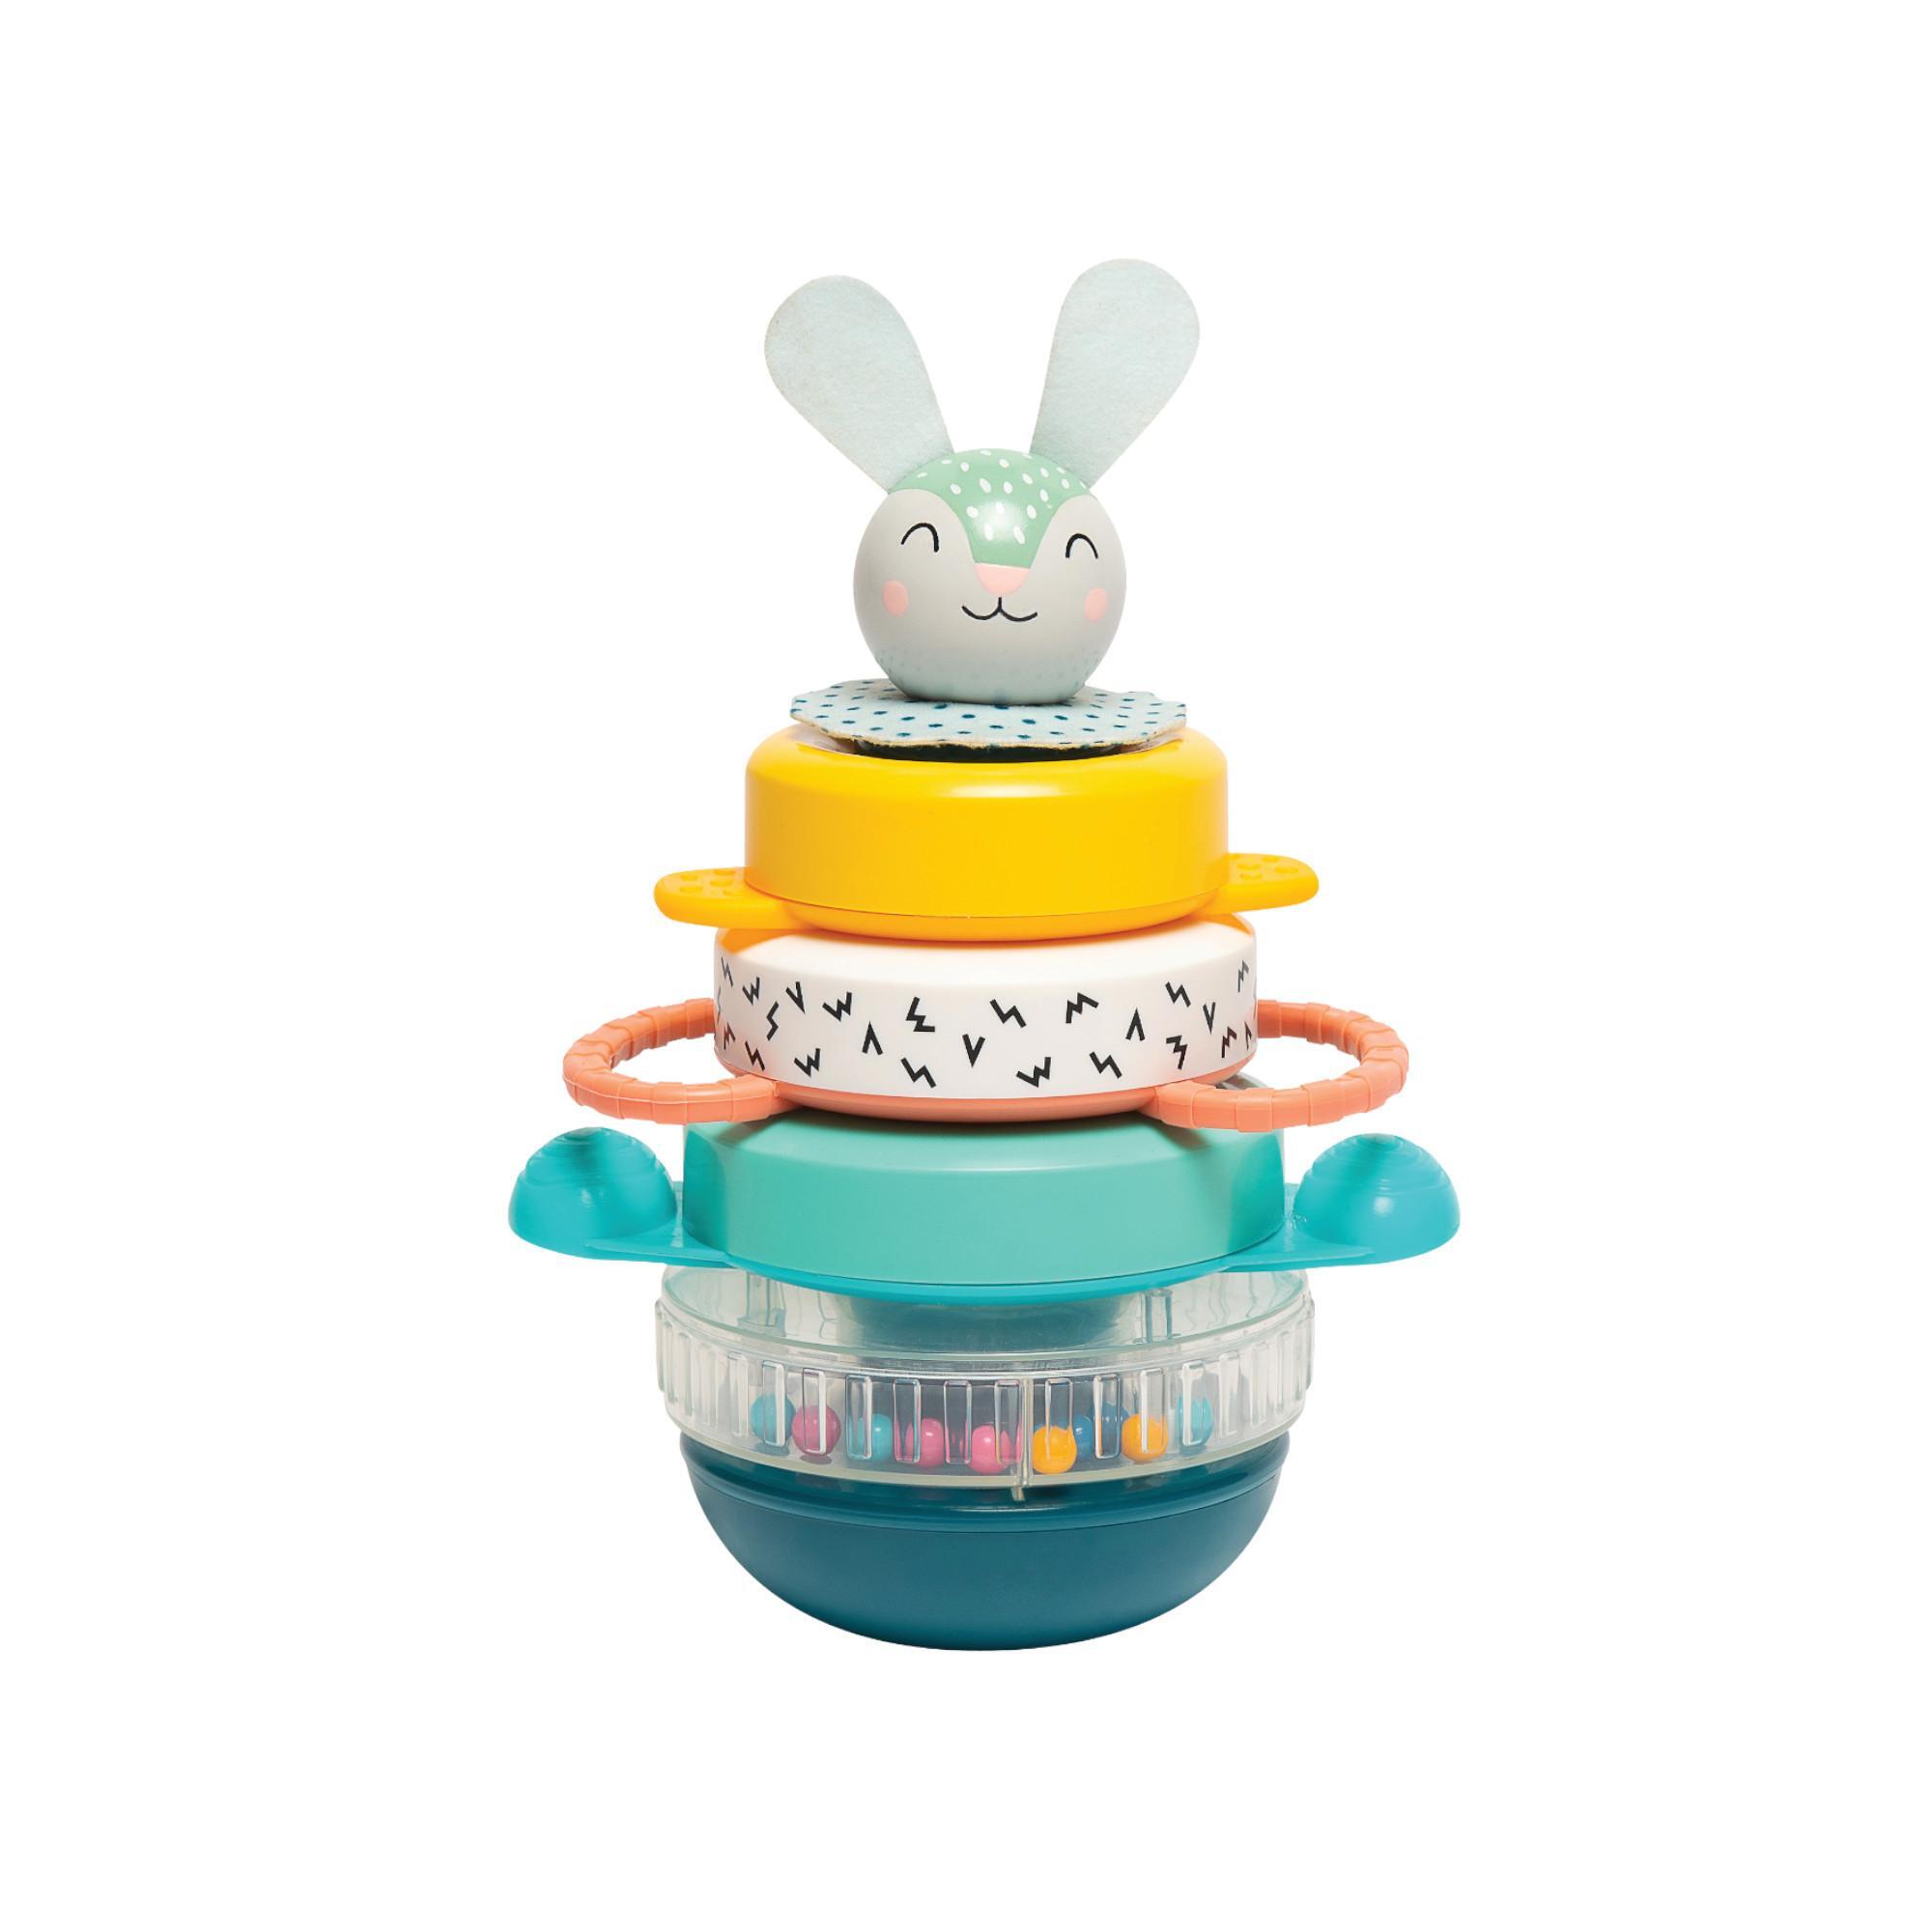 Taf Toys Žiedelių bokštas
„Hunny Bunny“ - Taf Toys